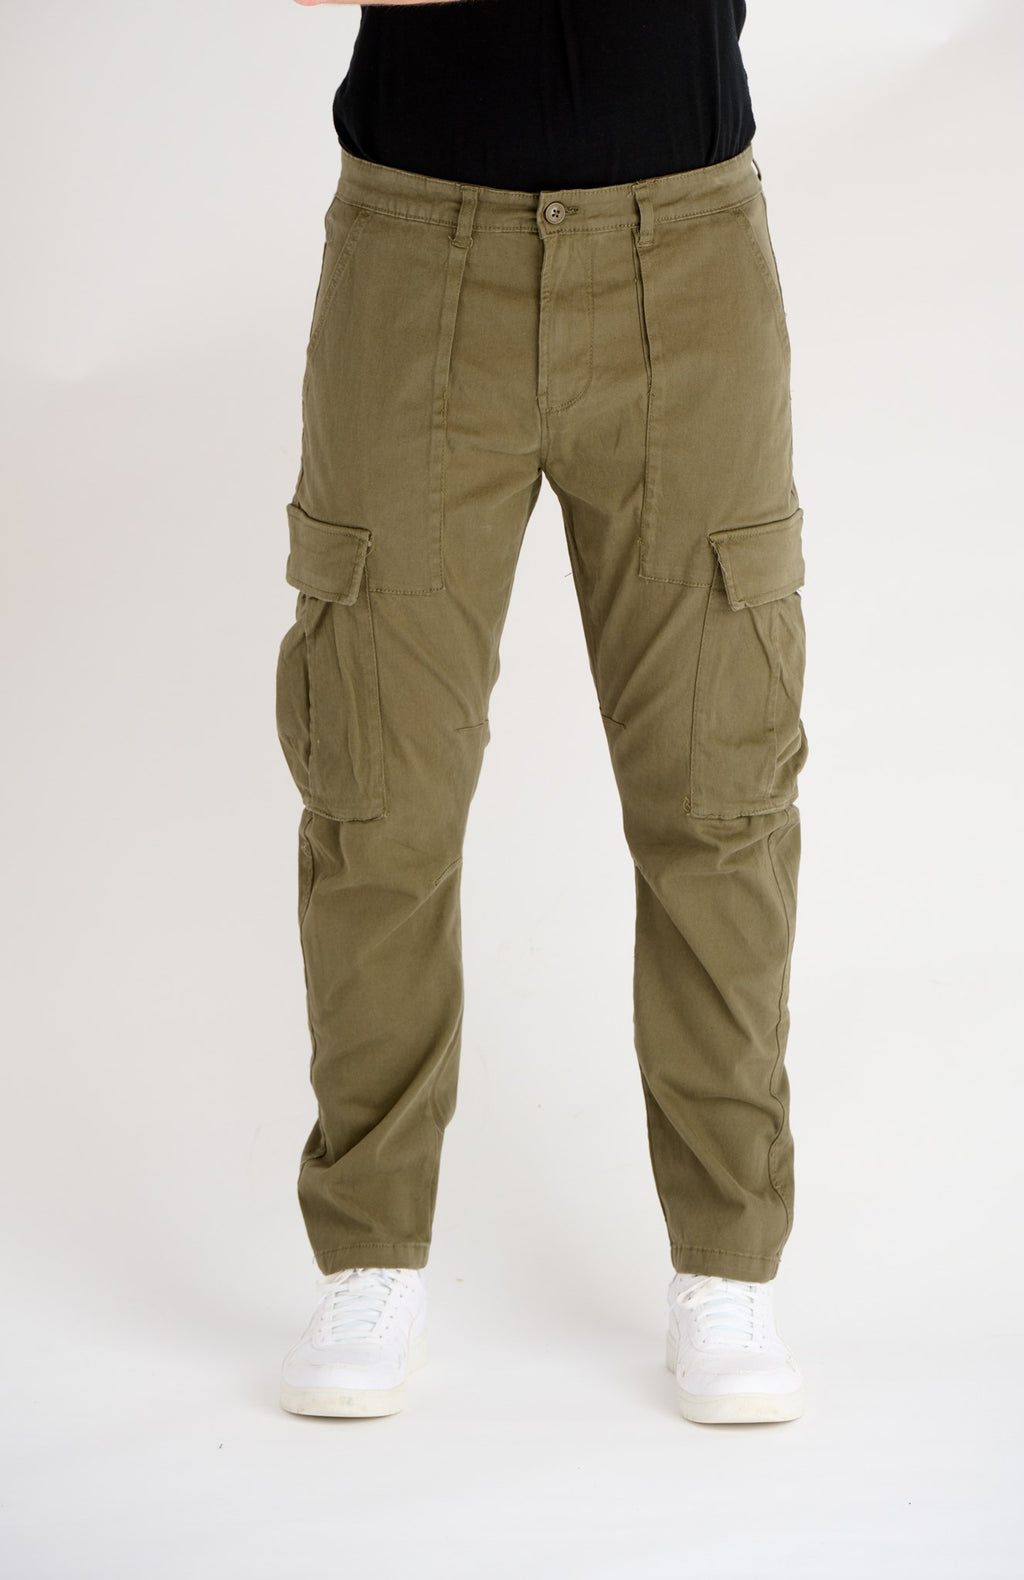 Rando Cargo Pants - Army